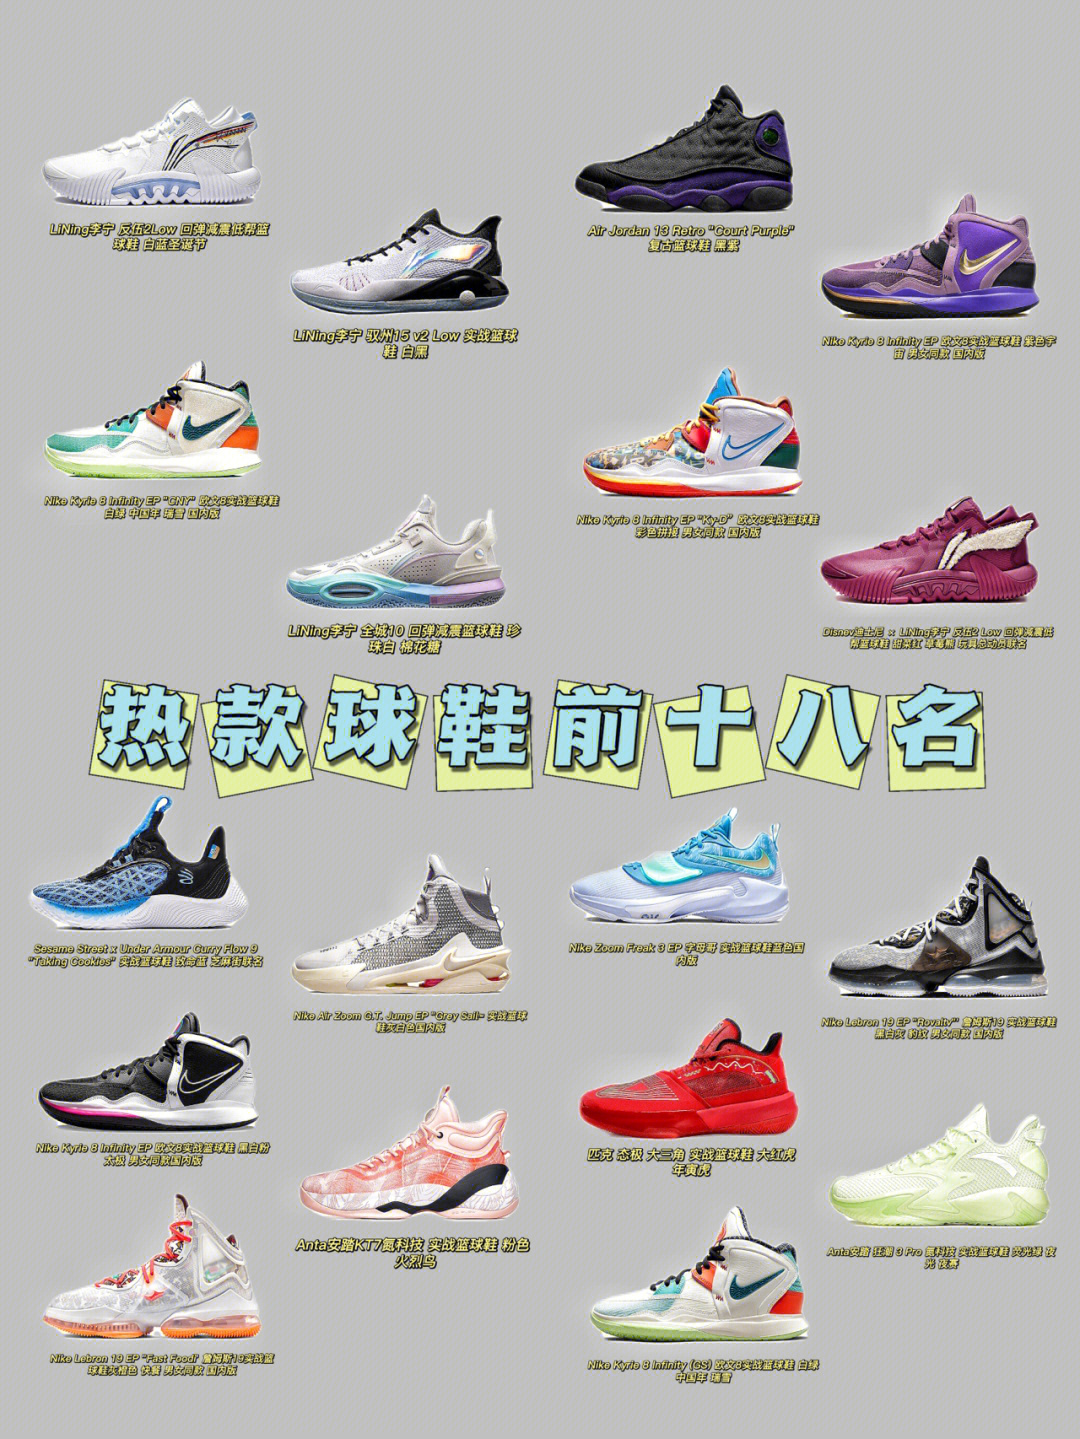 十大篮球鞋排名图片